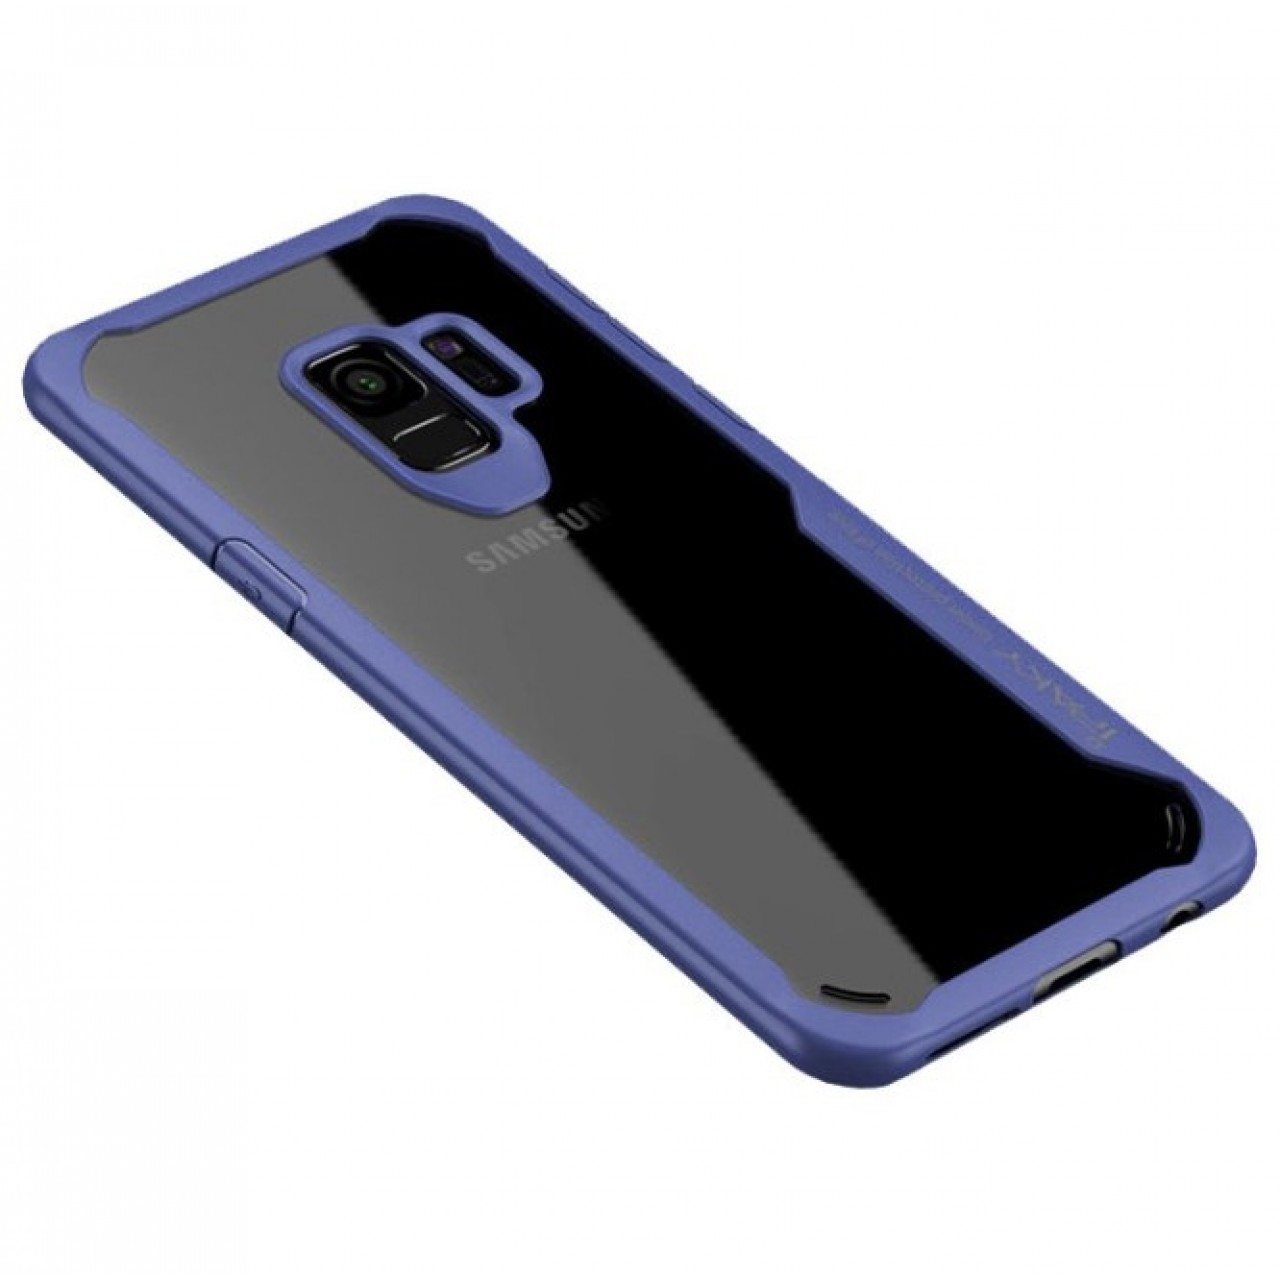 Θήκη Samsung Galaxy S9 (G960F) iPaky Frame Hybrid Σκληρή Πλαστική - 3784 - Μπλέ - OEM